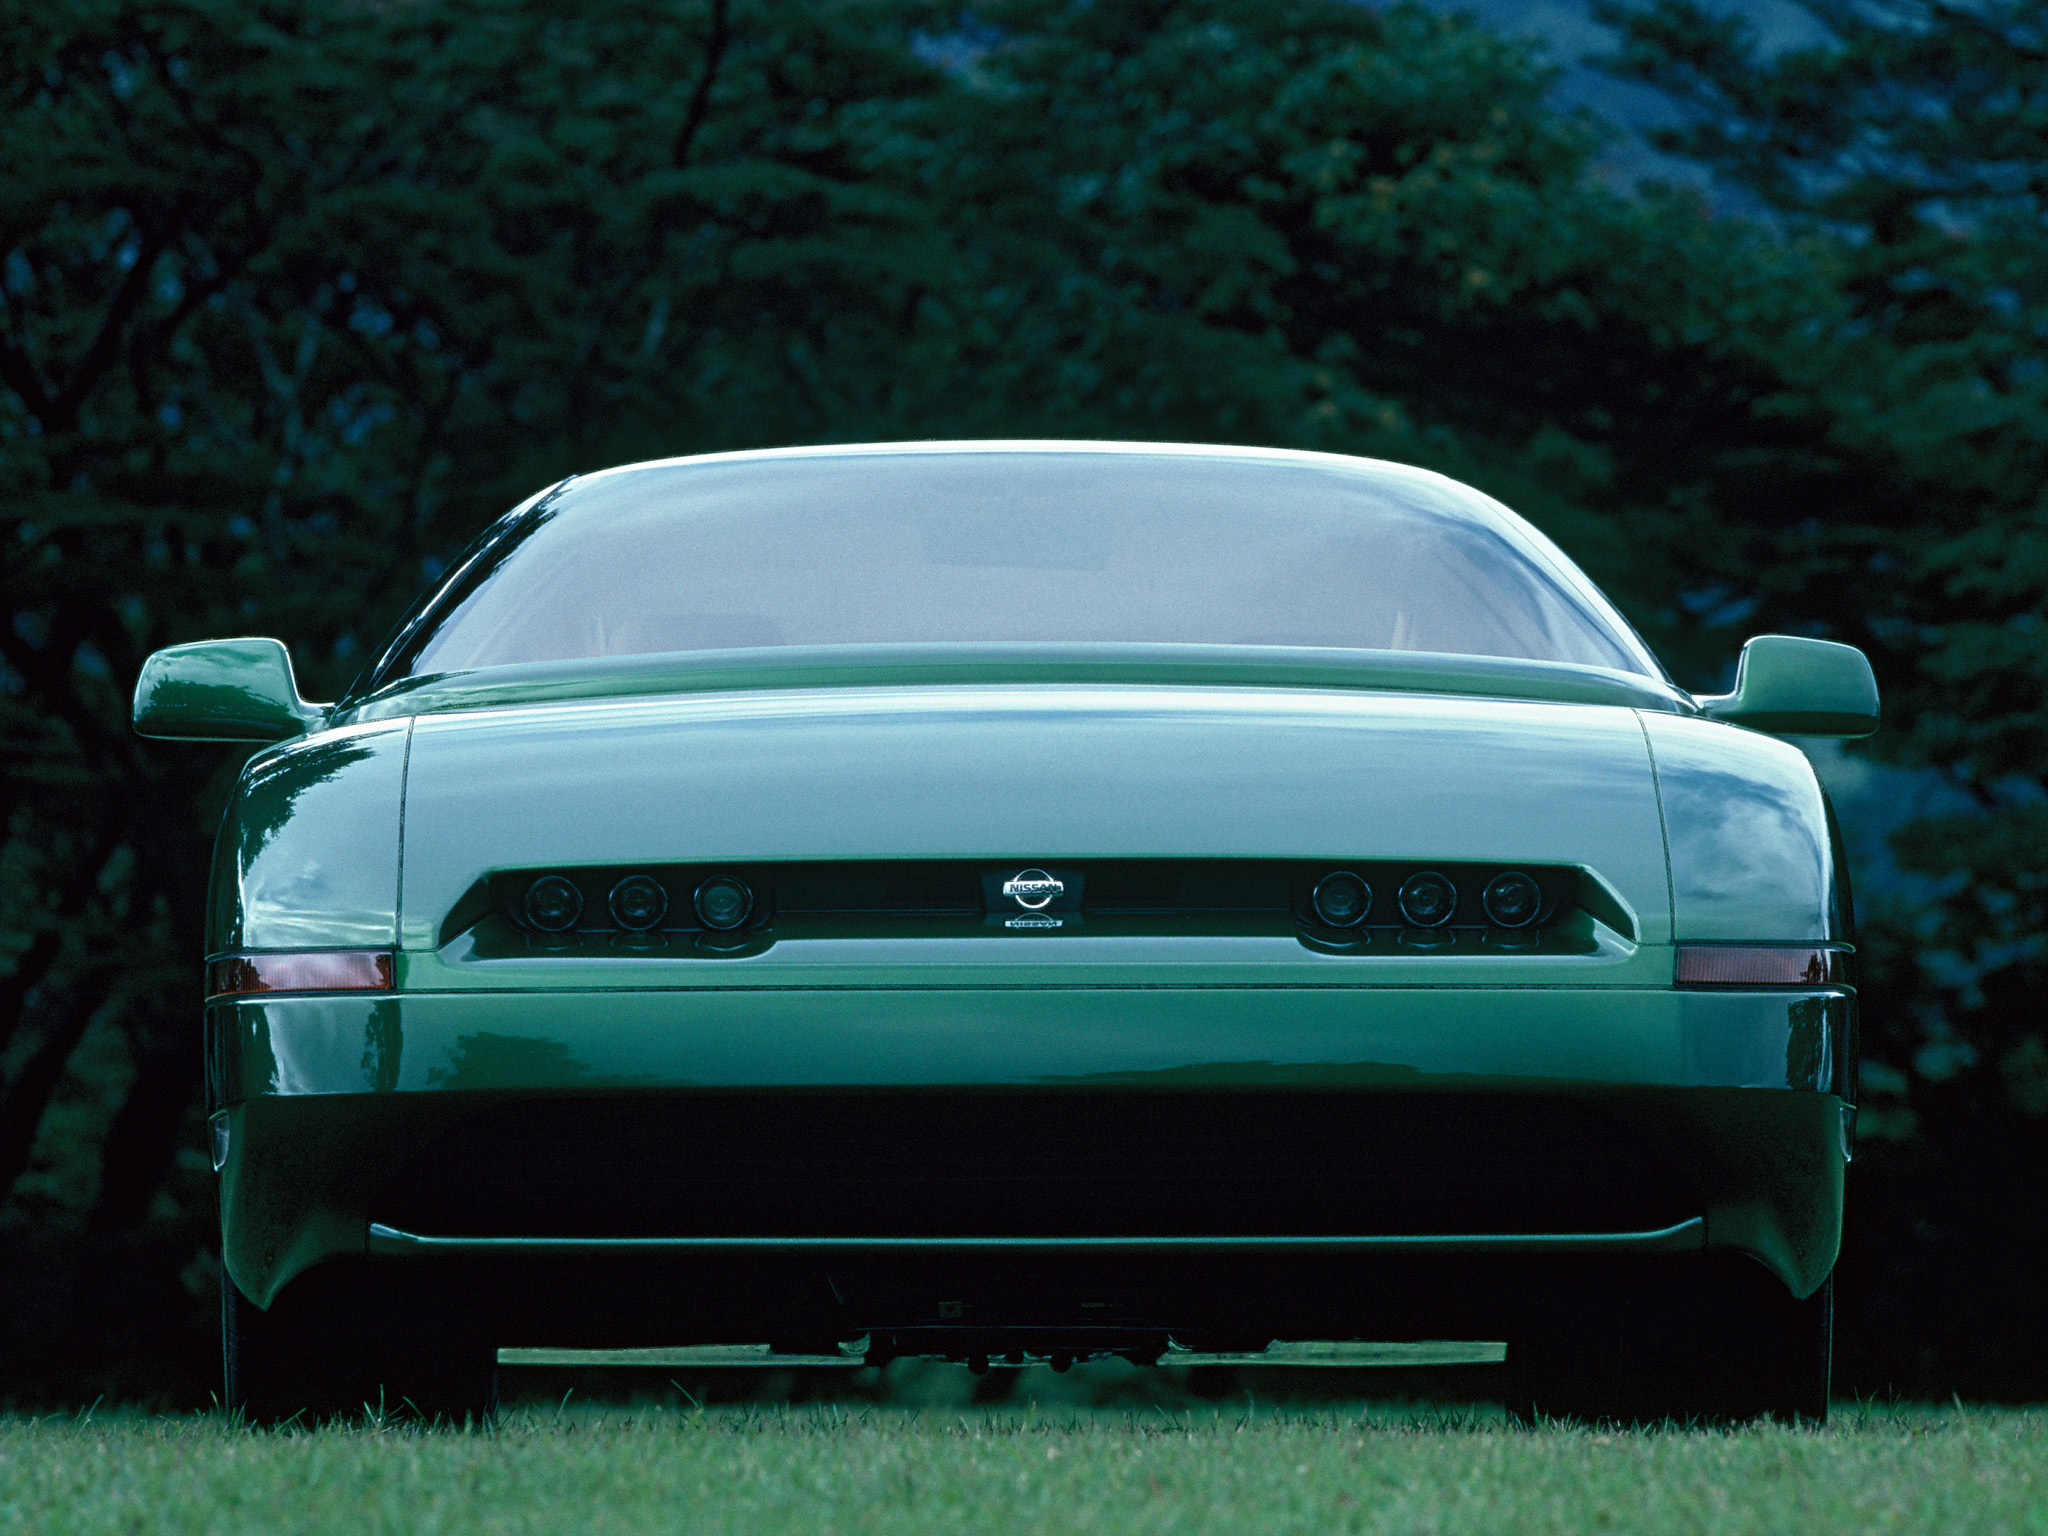 Nissan AP-X Concept, 1993